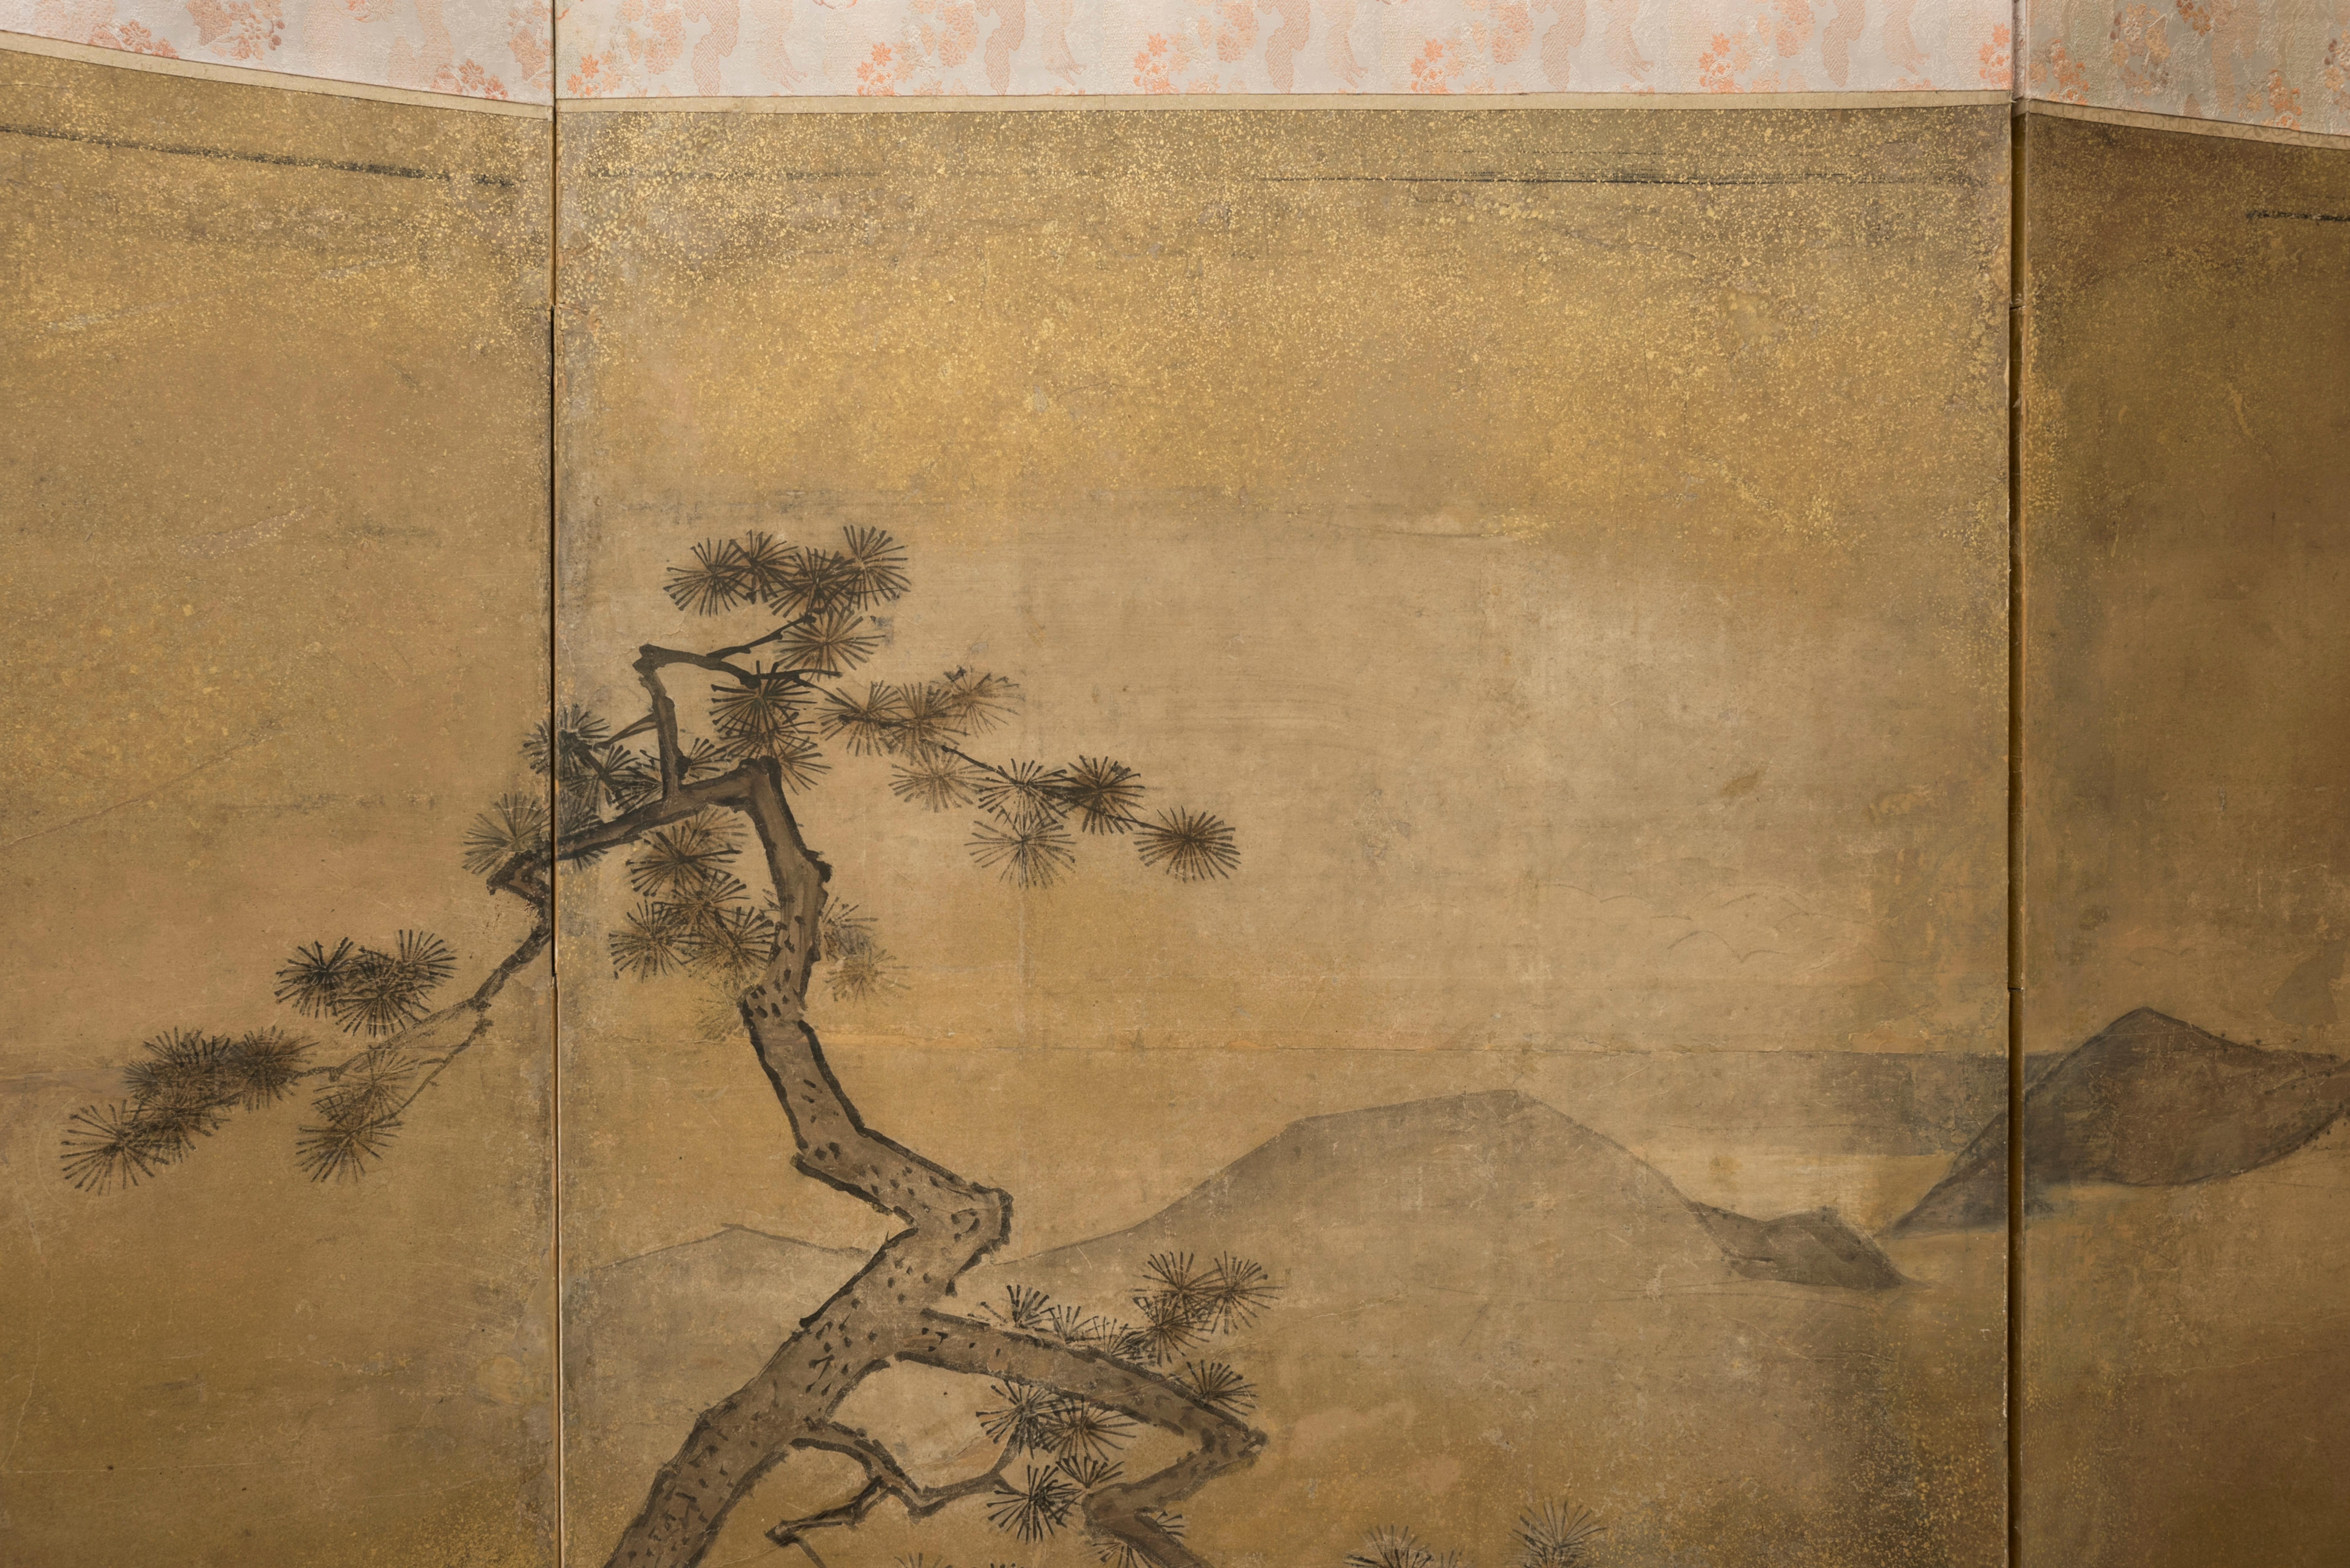 Écran à six panneaux représentant la sortie de la ville d'un empereur chinois à cheval et de sa concubine dans un luxueux palanquin. 

Il s'agit peut-être d'une scène illustrant le poème Le chant de la douleur éternelle (Chang hen ge, 長恨歌) écrit par